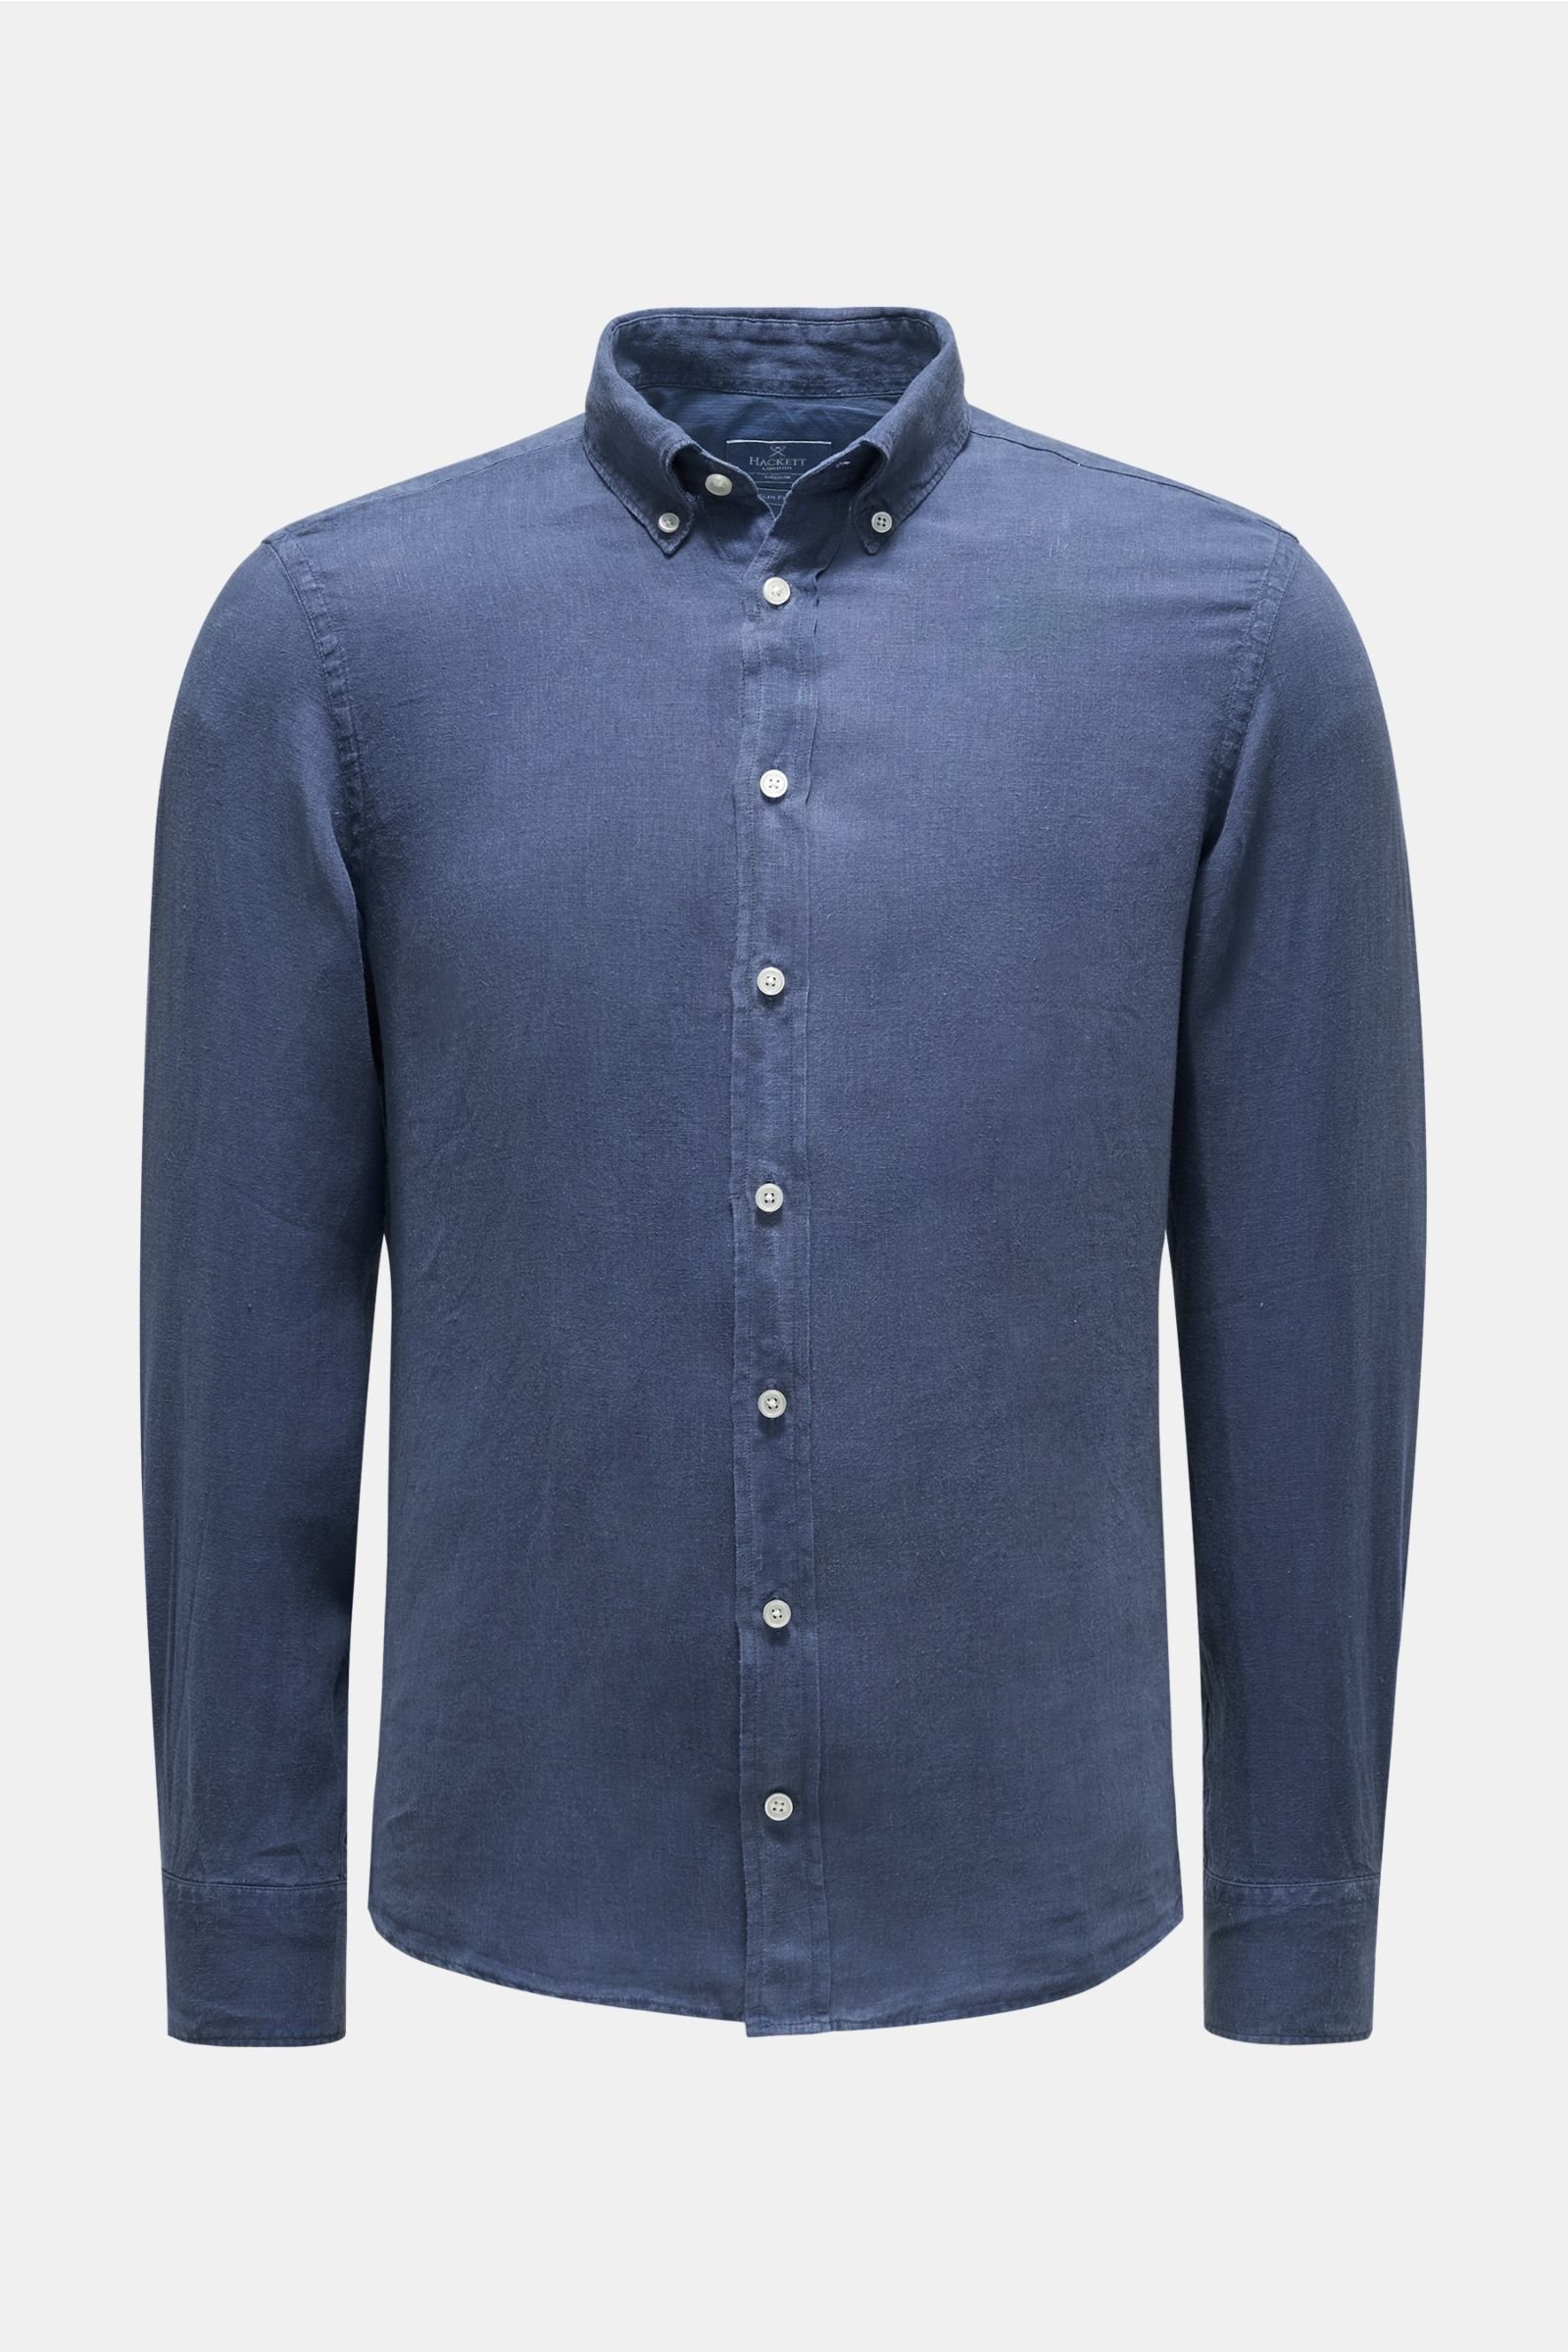 Leinenhemd Button-Down-Kragen graublau